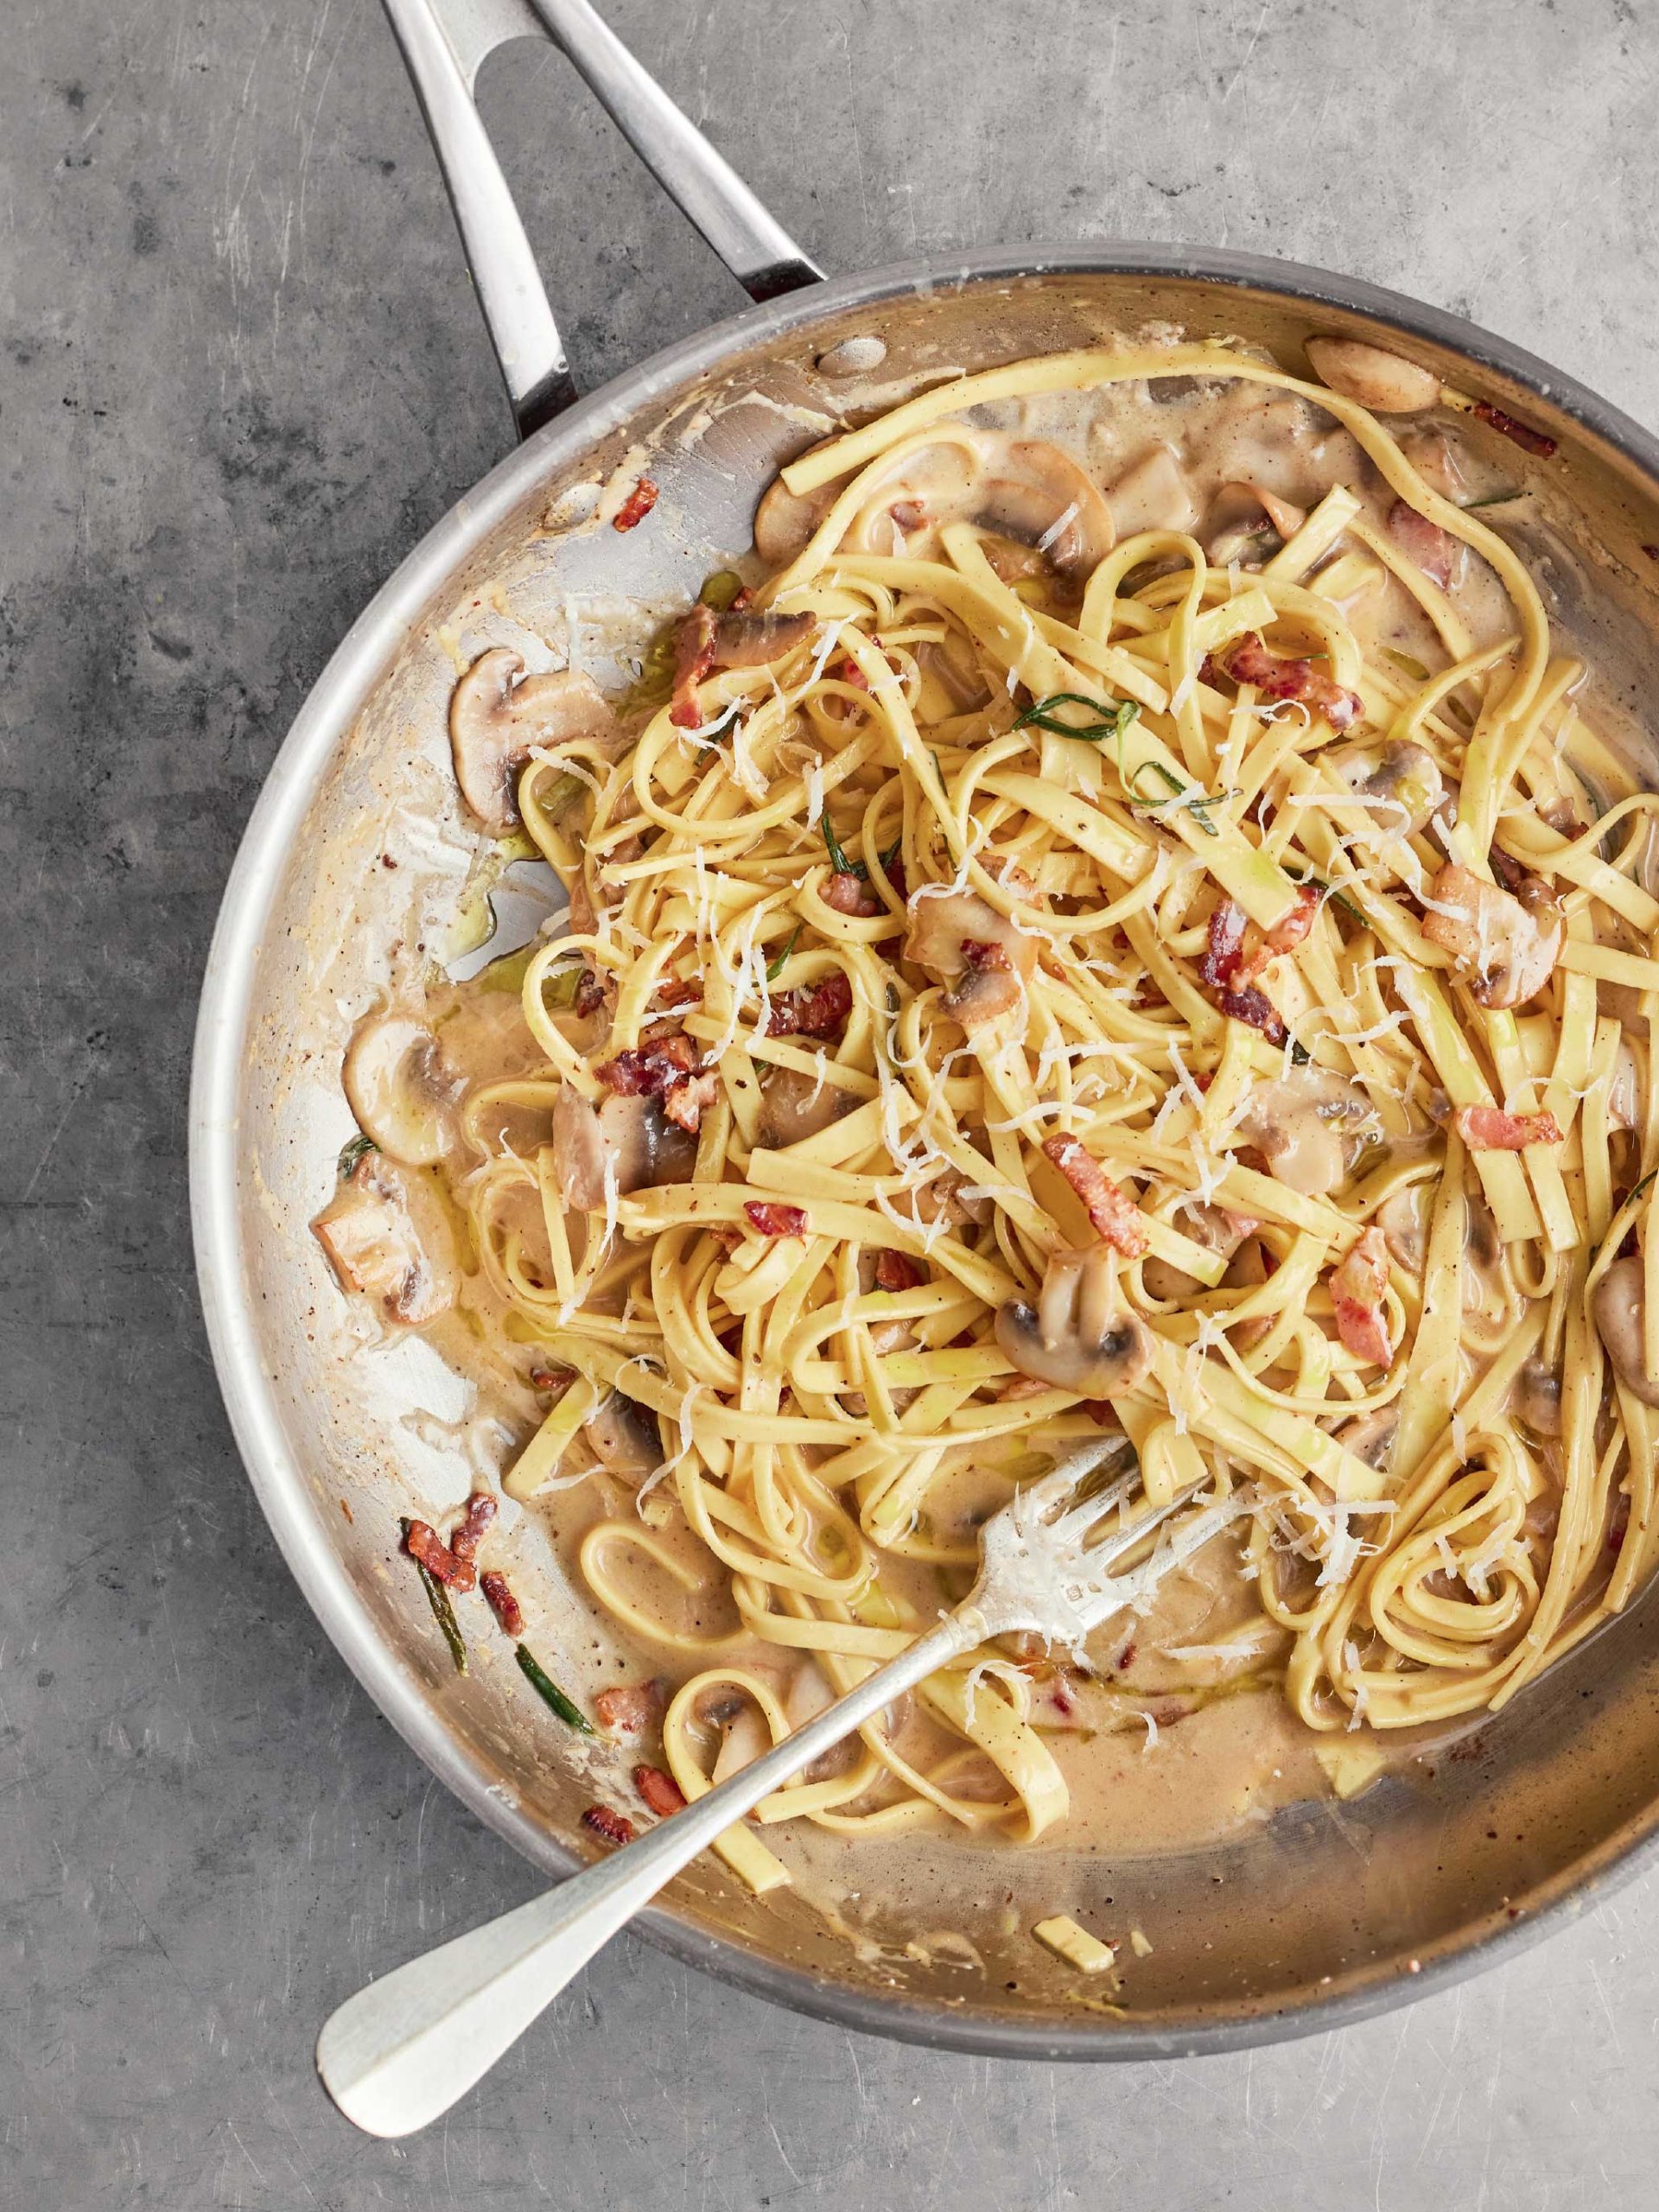 Best Recipes Jamie Oliver's One Pan Wonders